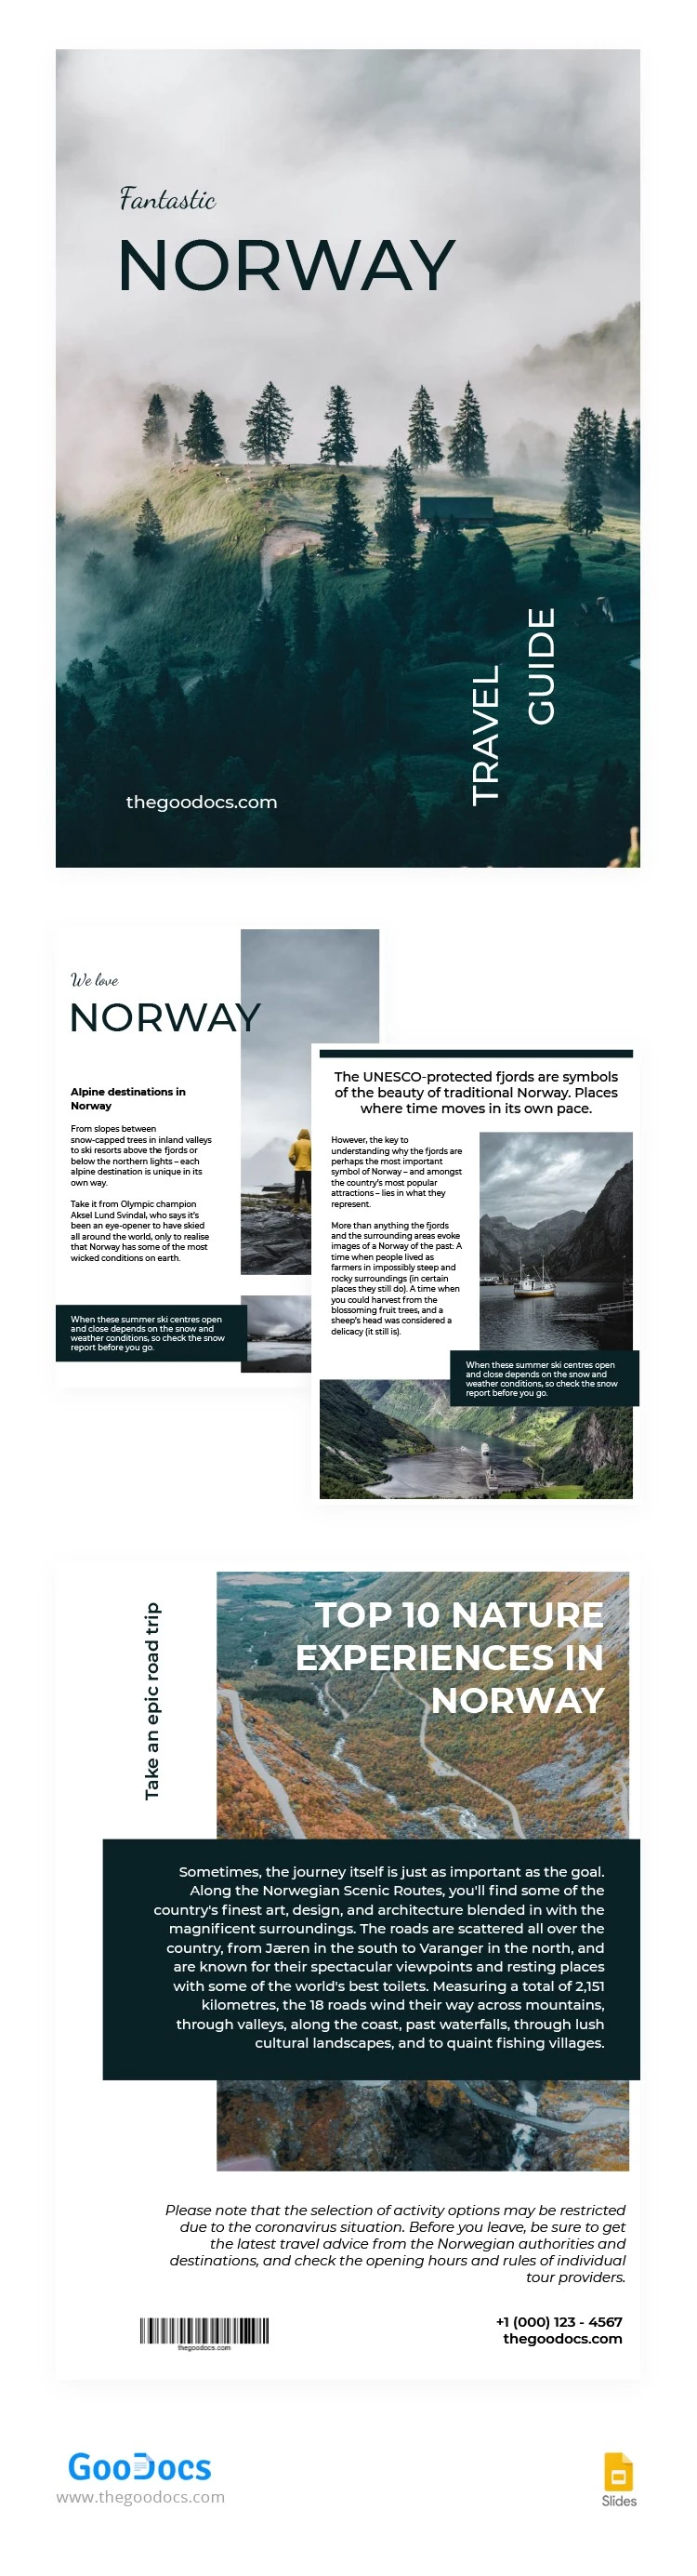 Livre fantastique de Norvège - free Google Docs Template - 10062805